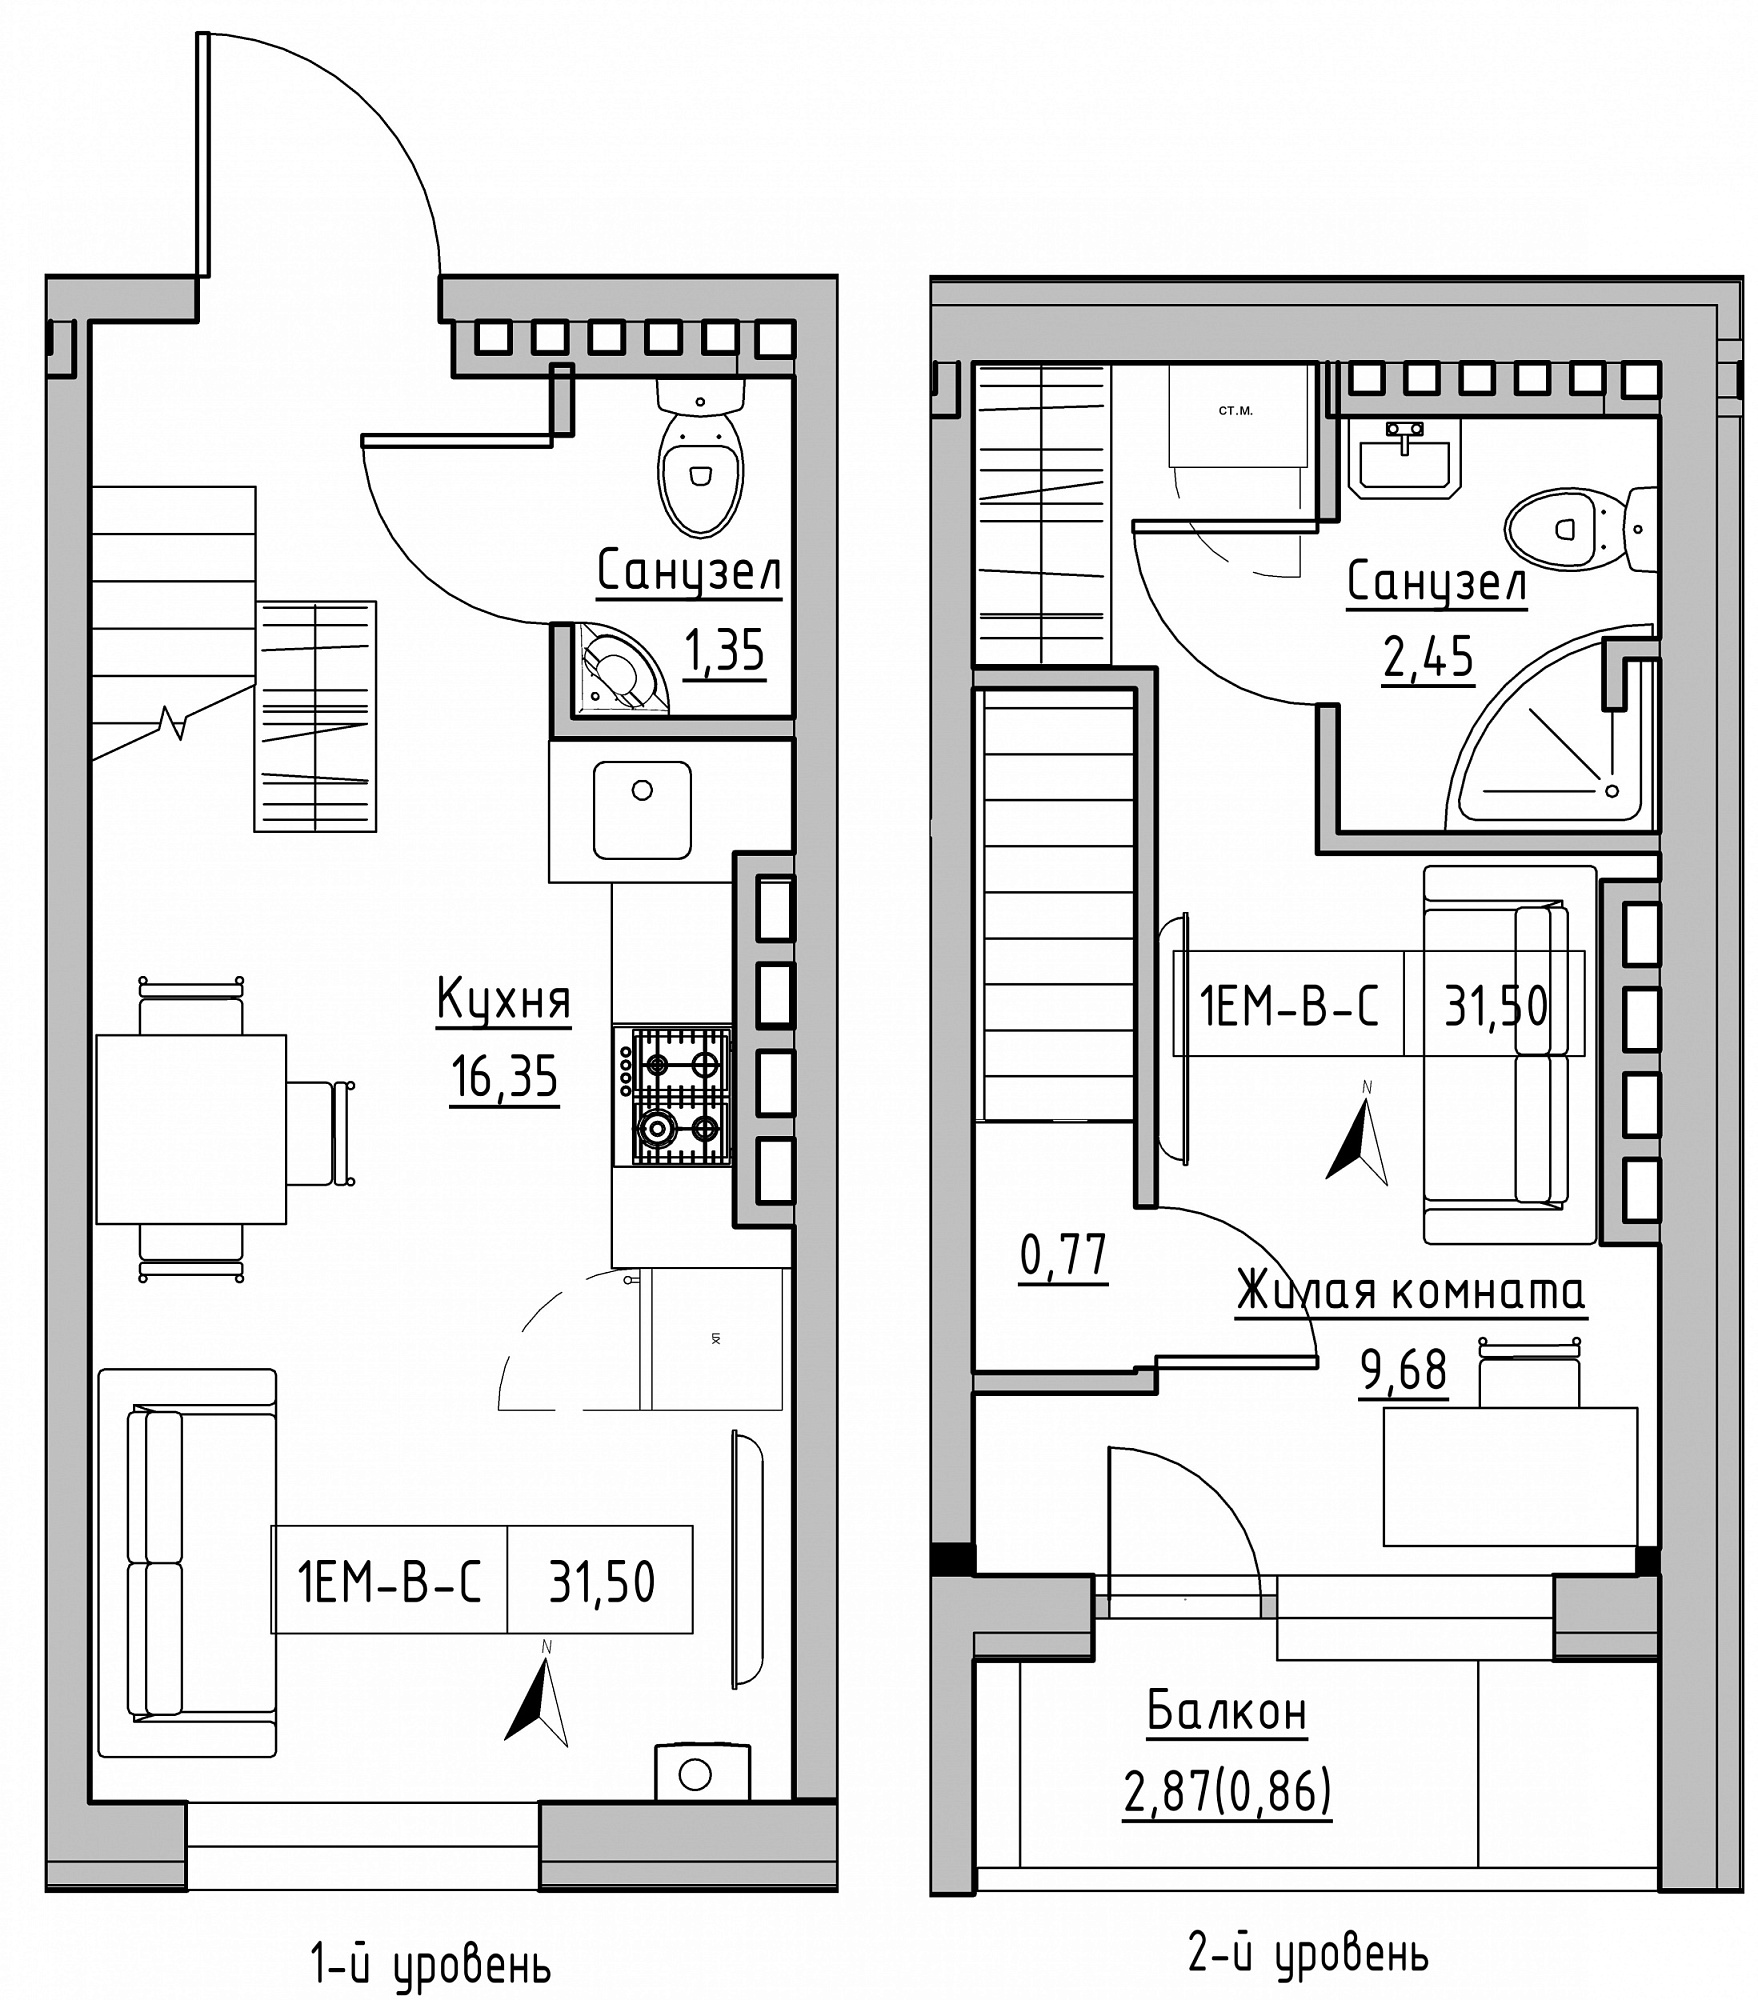 Planning 2-lvl flats area 31.5m2, KS-024-05/0009.